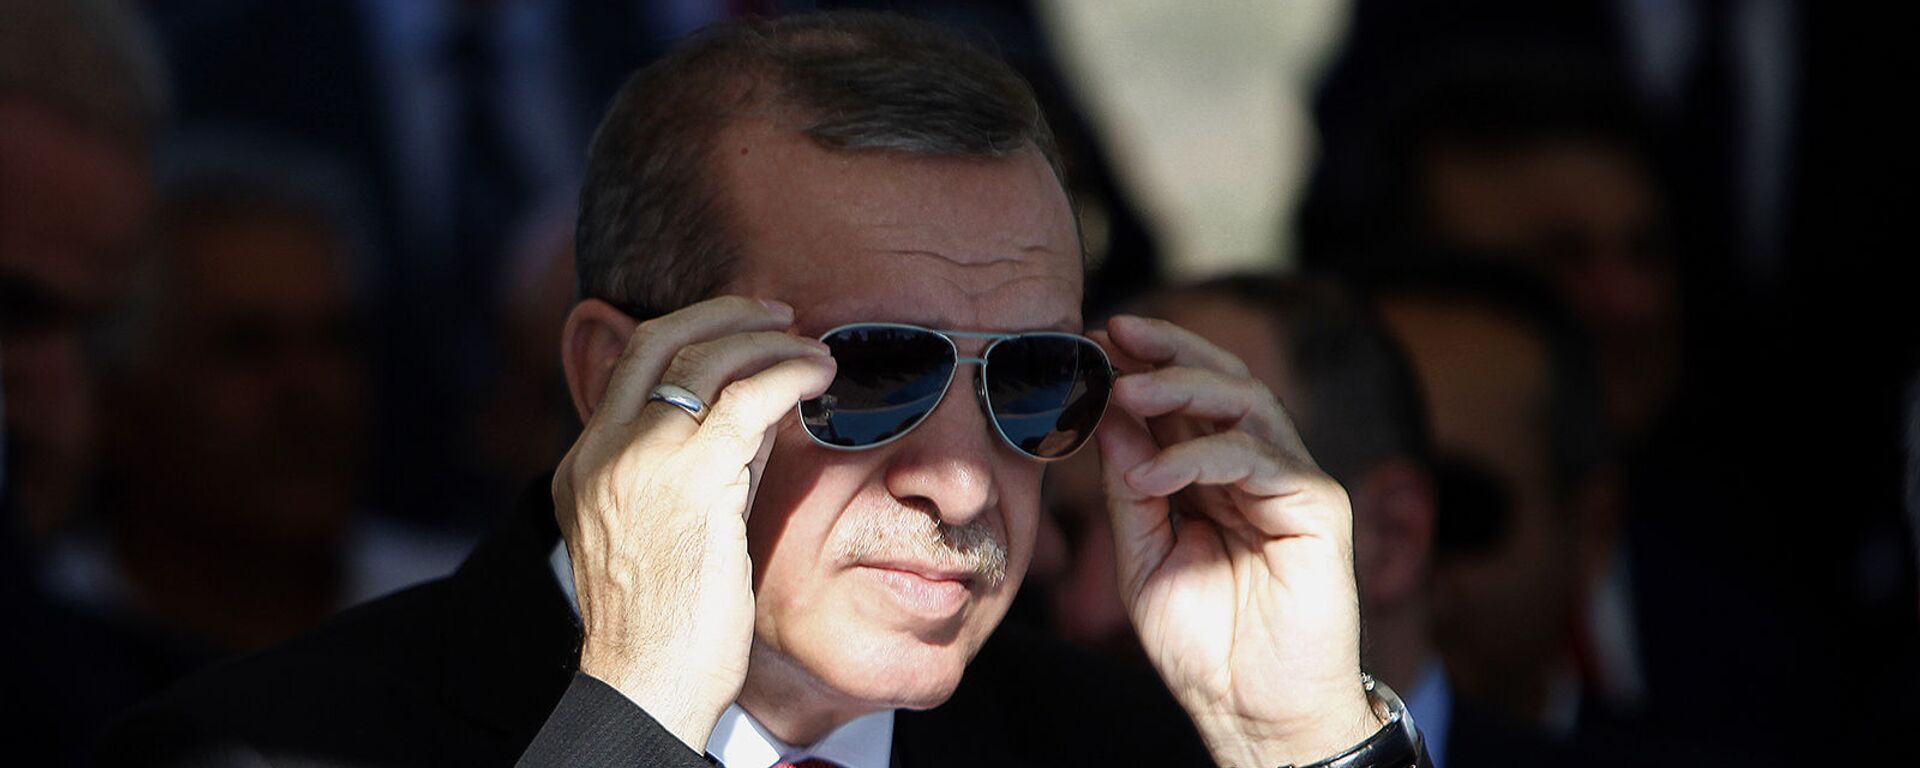 Президент Турции Реджеп Тайип Эрдоган поправляет солнцезащитные очки - Sputnik Армения, 1920, 03.09.2021